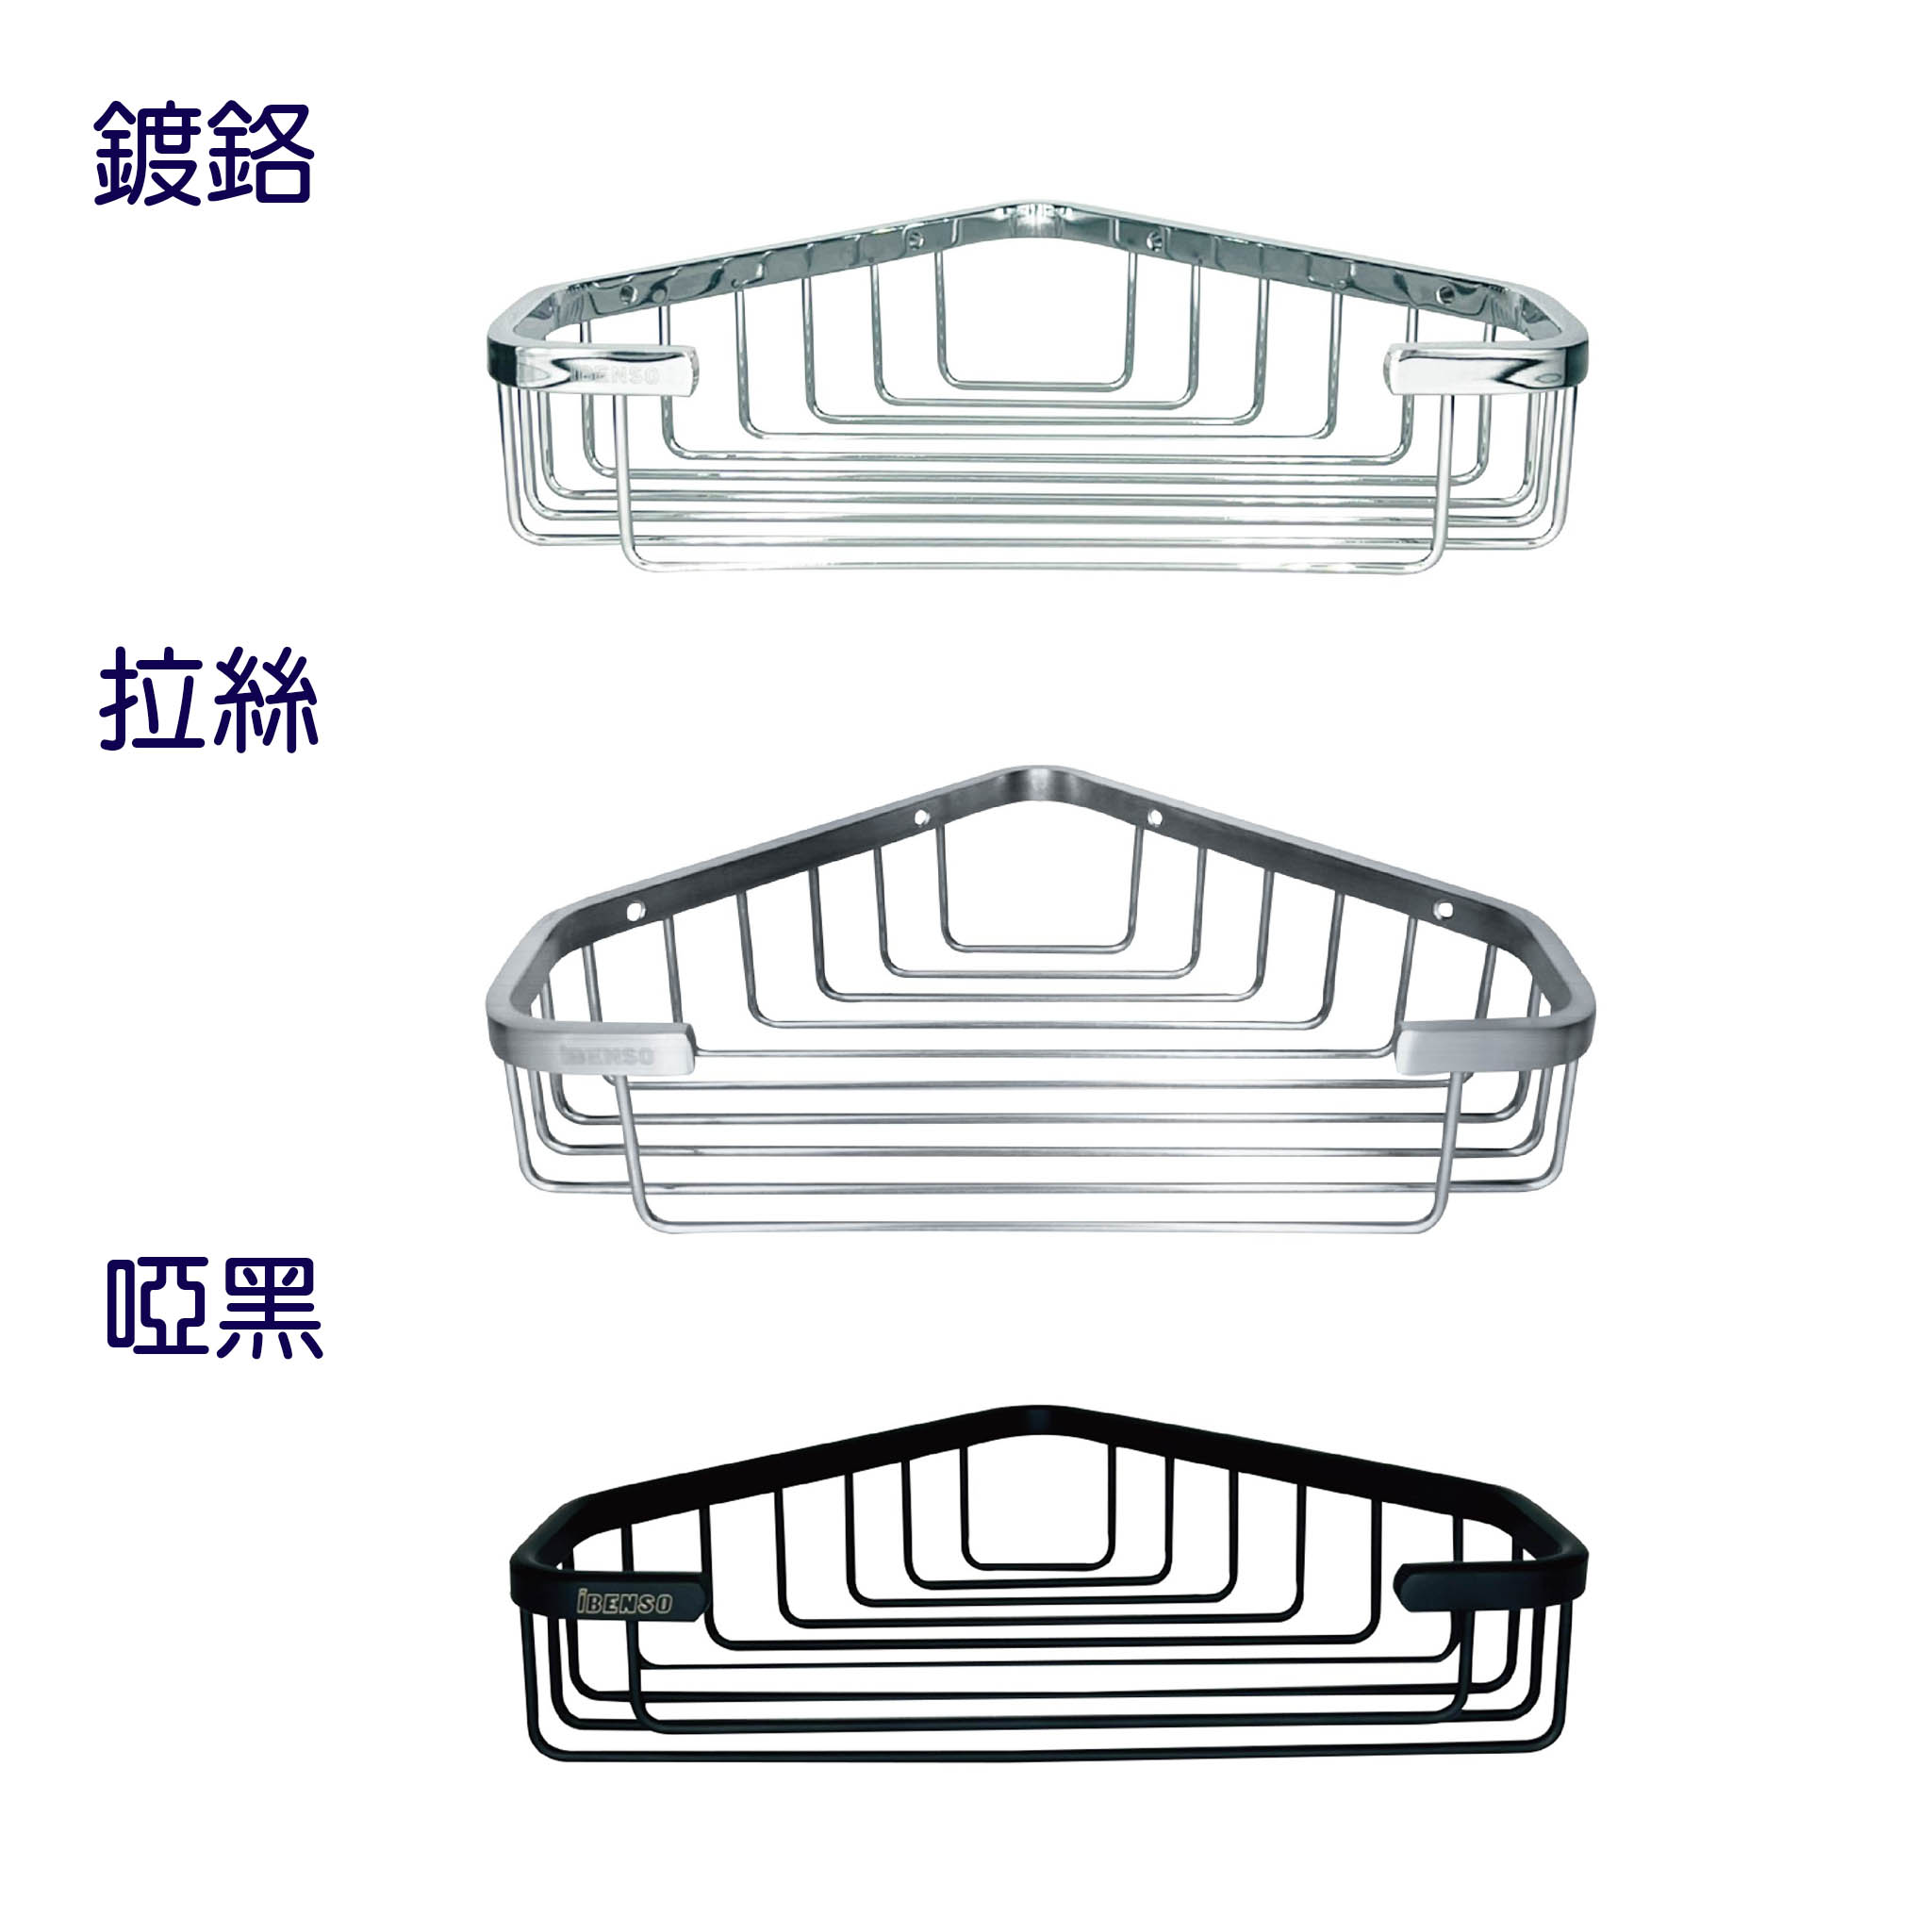 宗曄-BAS021-1 不鏽鋼轉角置物籃-(三款)